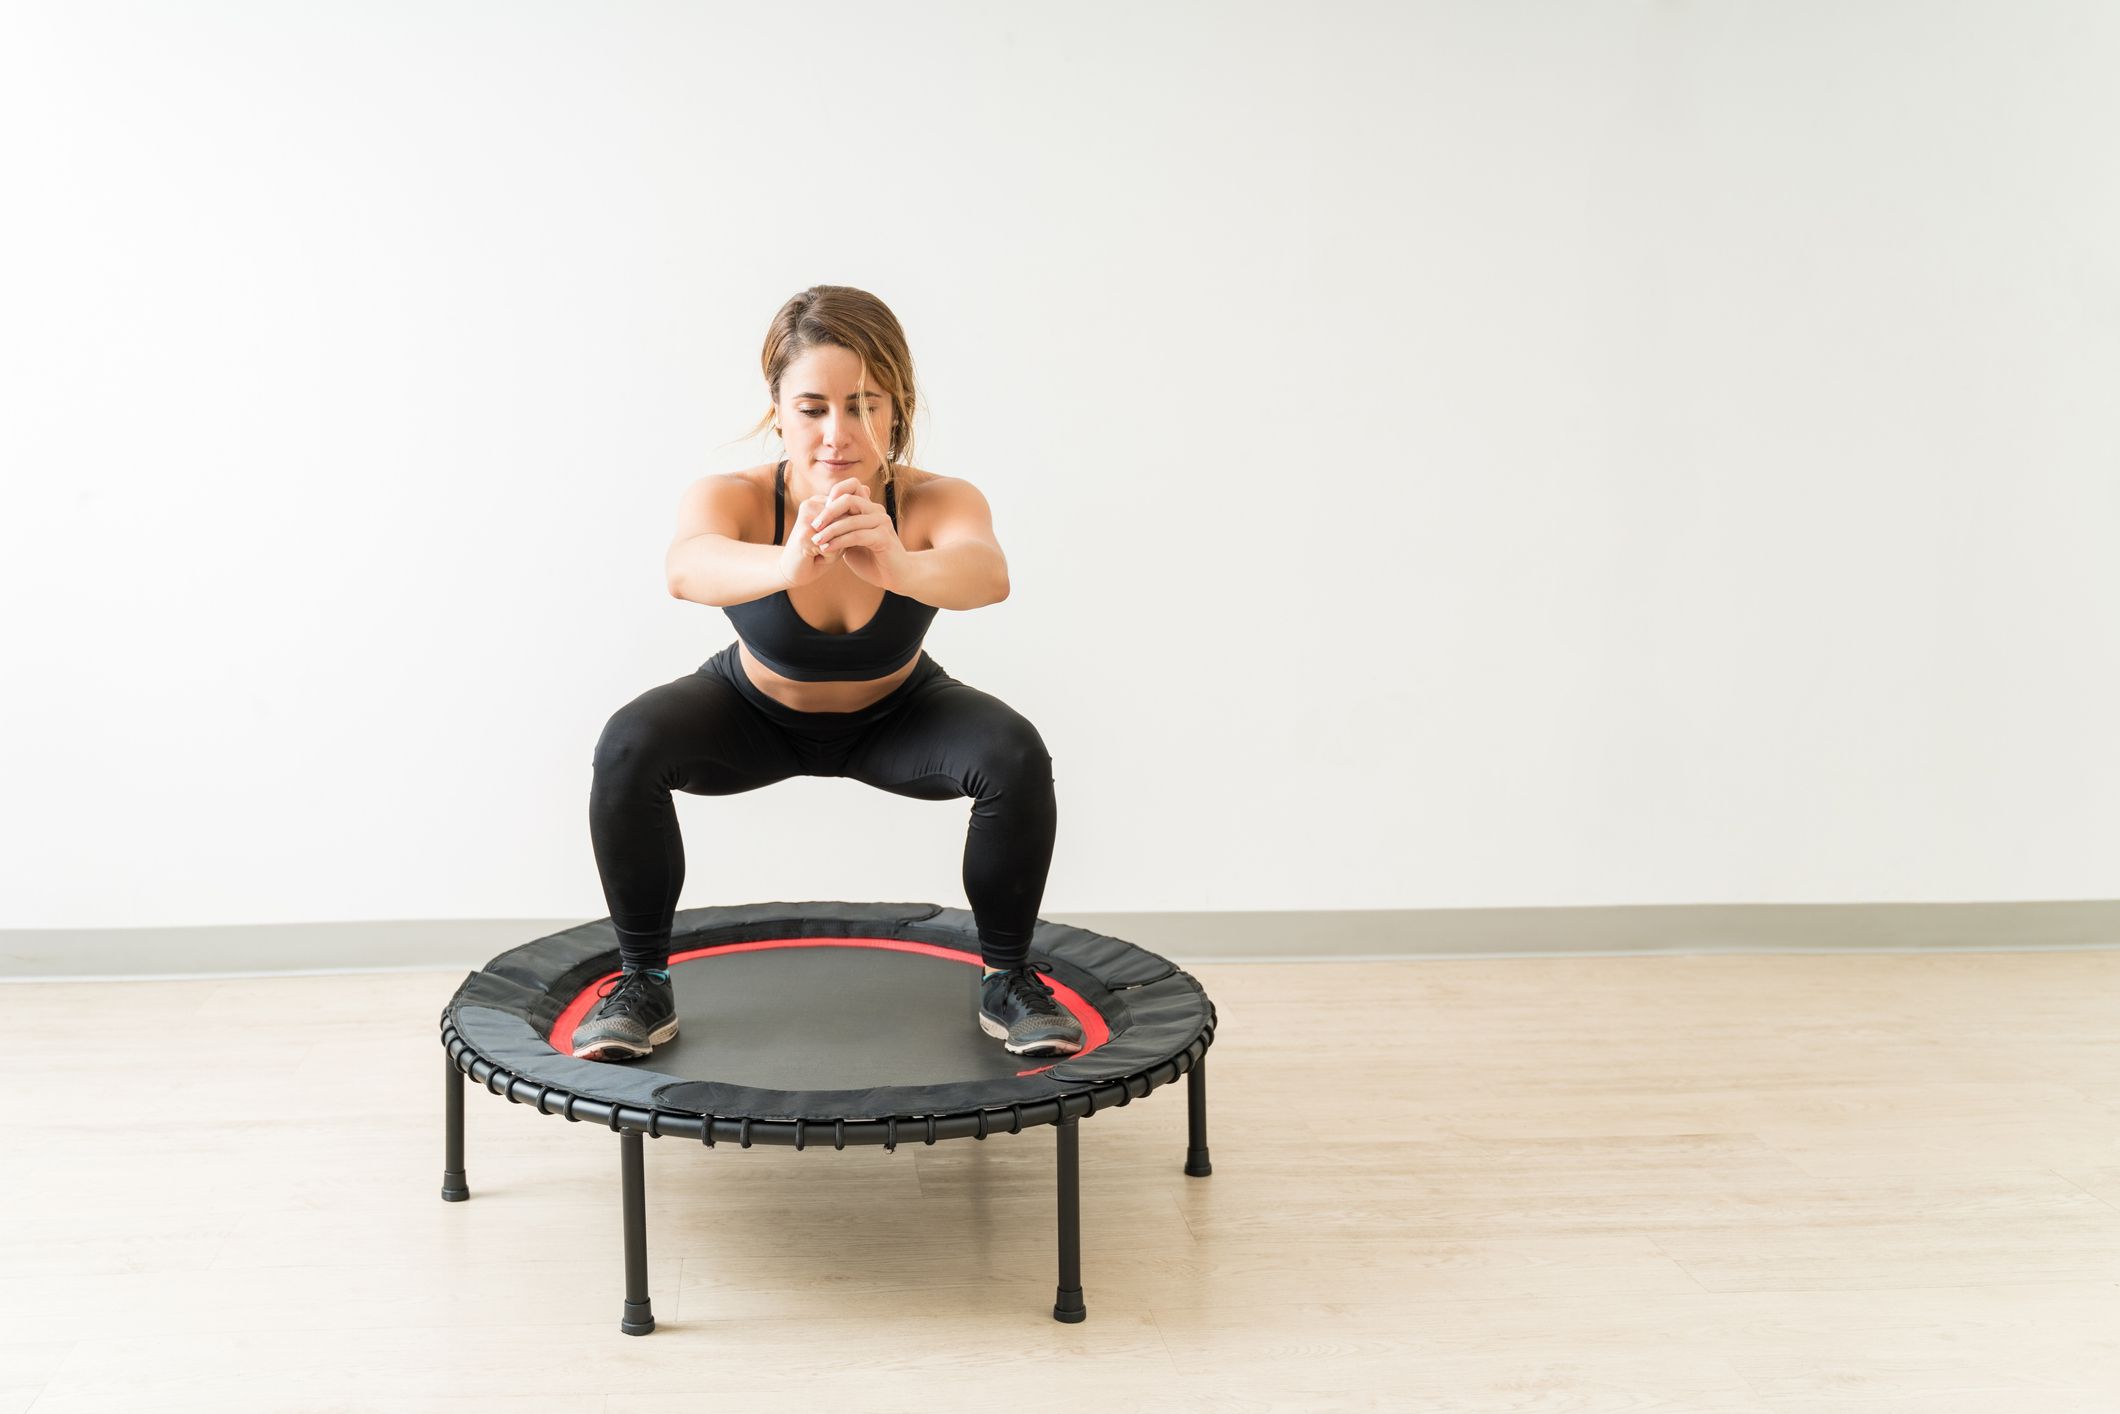 Vrouw die trampoline gebruikt voor rebounding oefening